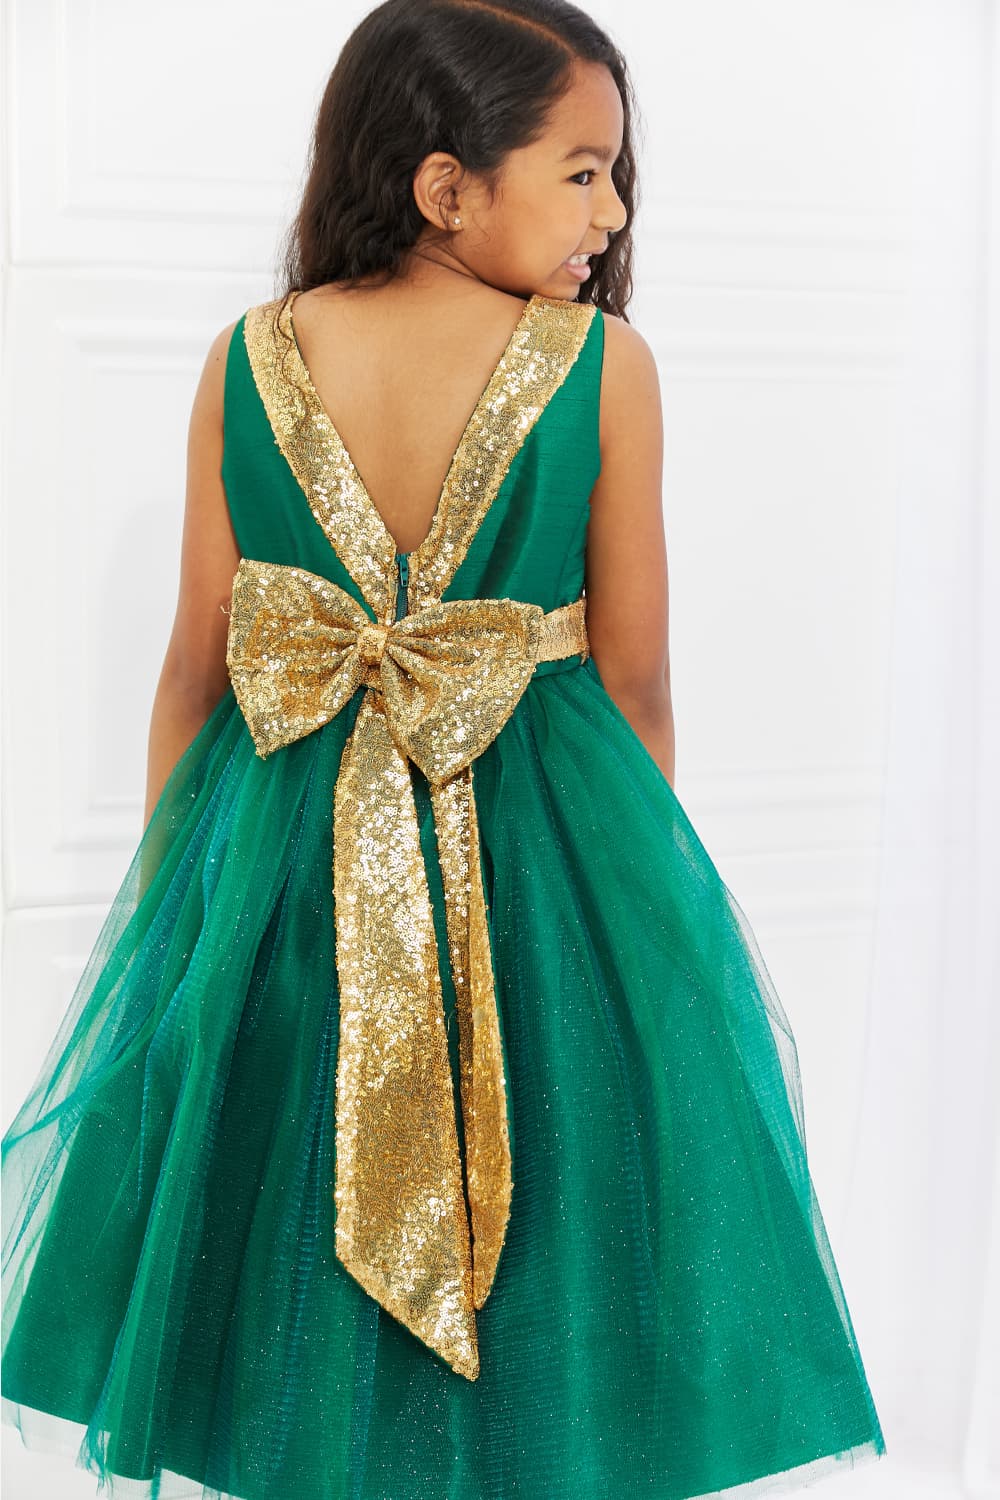 Kid's Dream Little Miss Classy Tutu Dress in Green